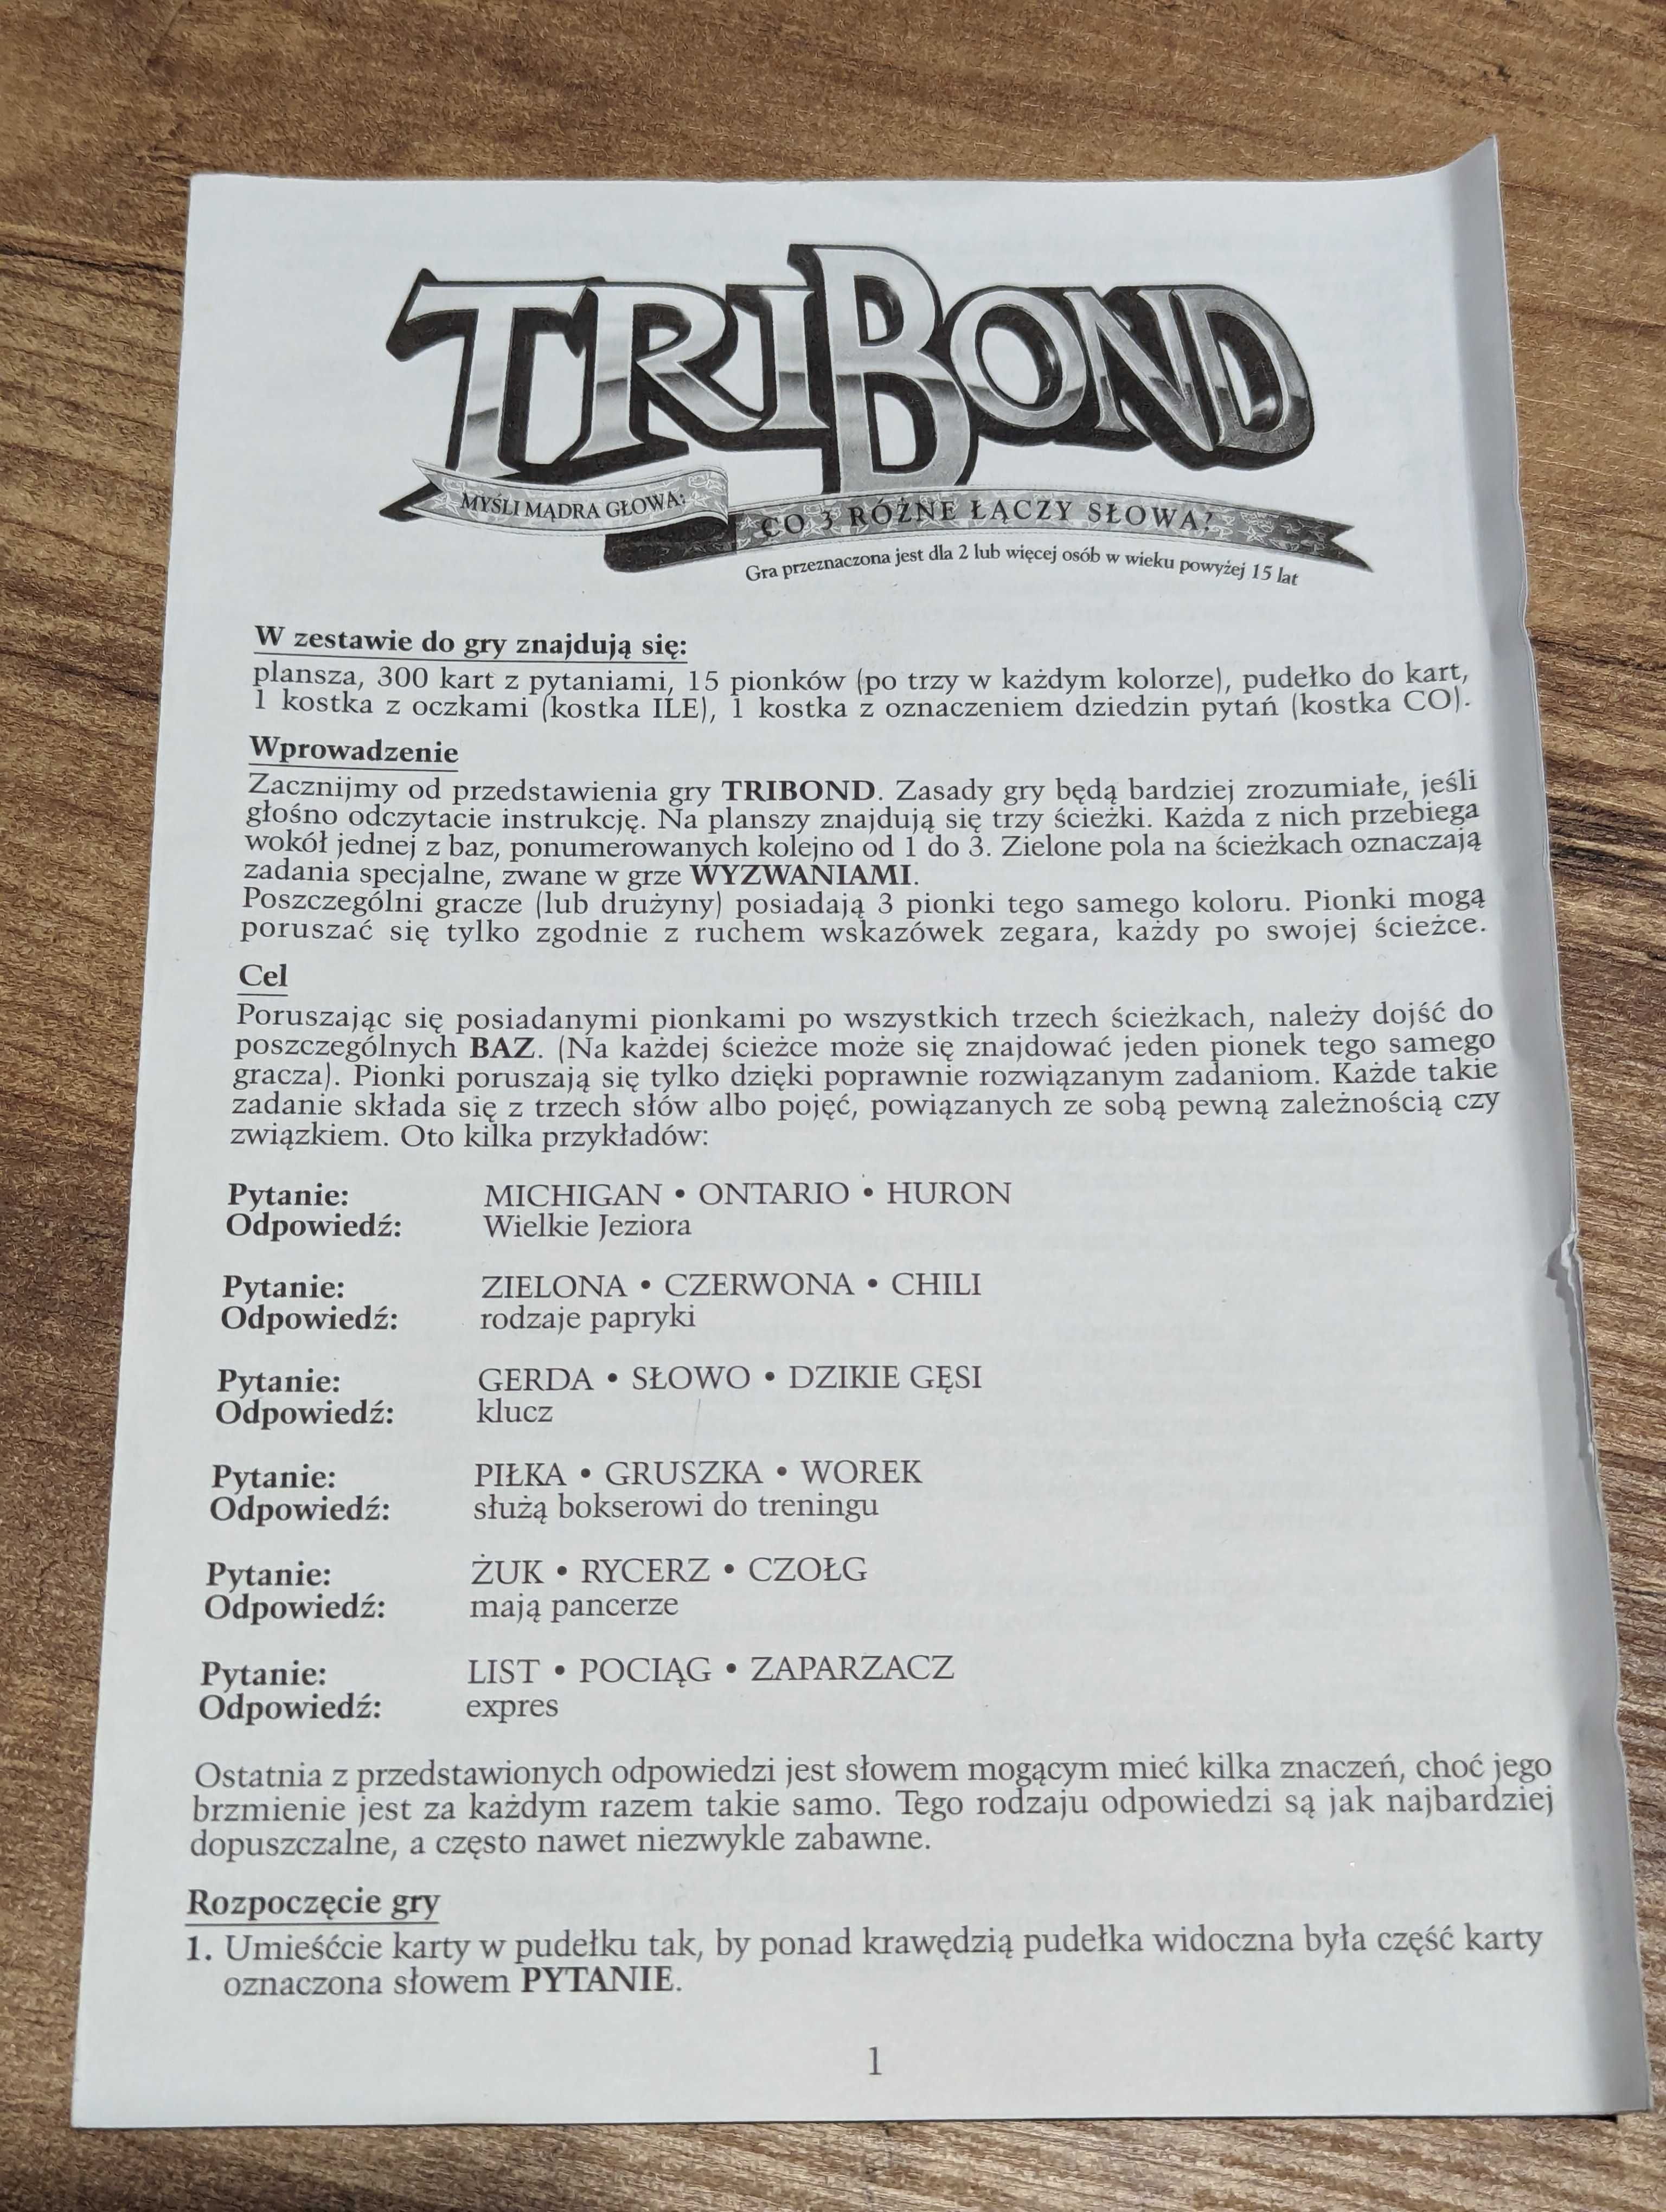 Tribond | co 3 różne łączy słowa | Brio